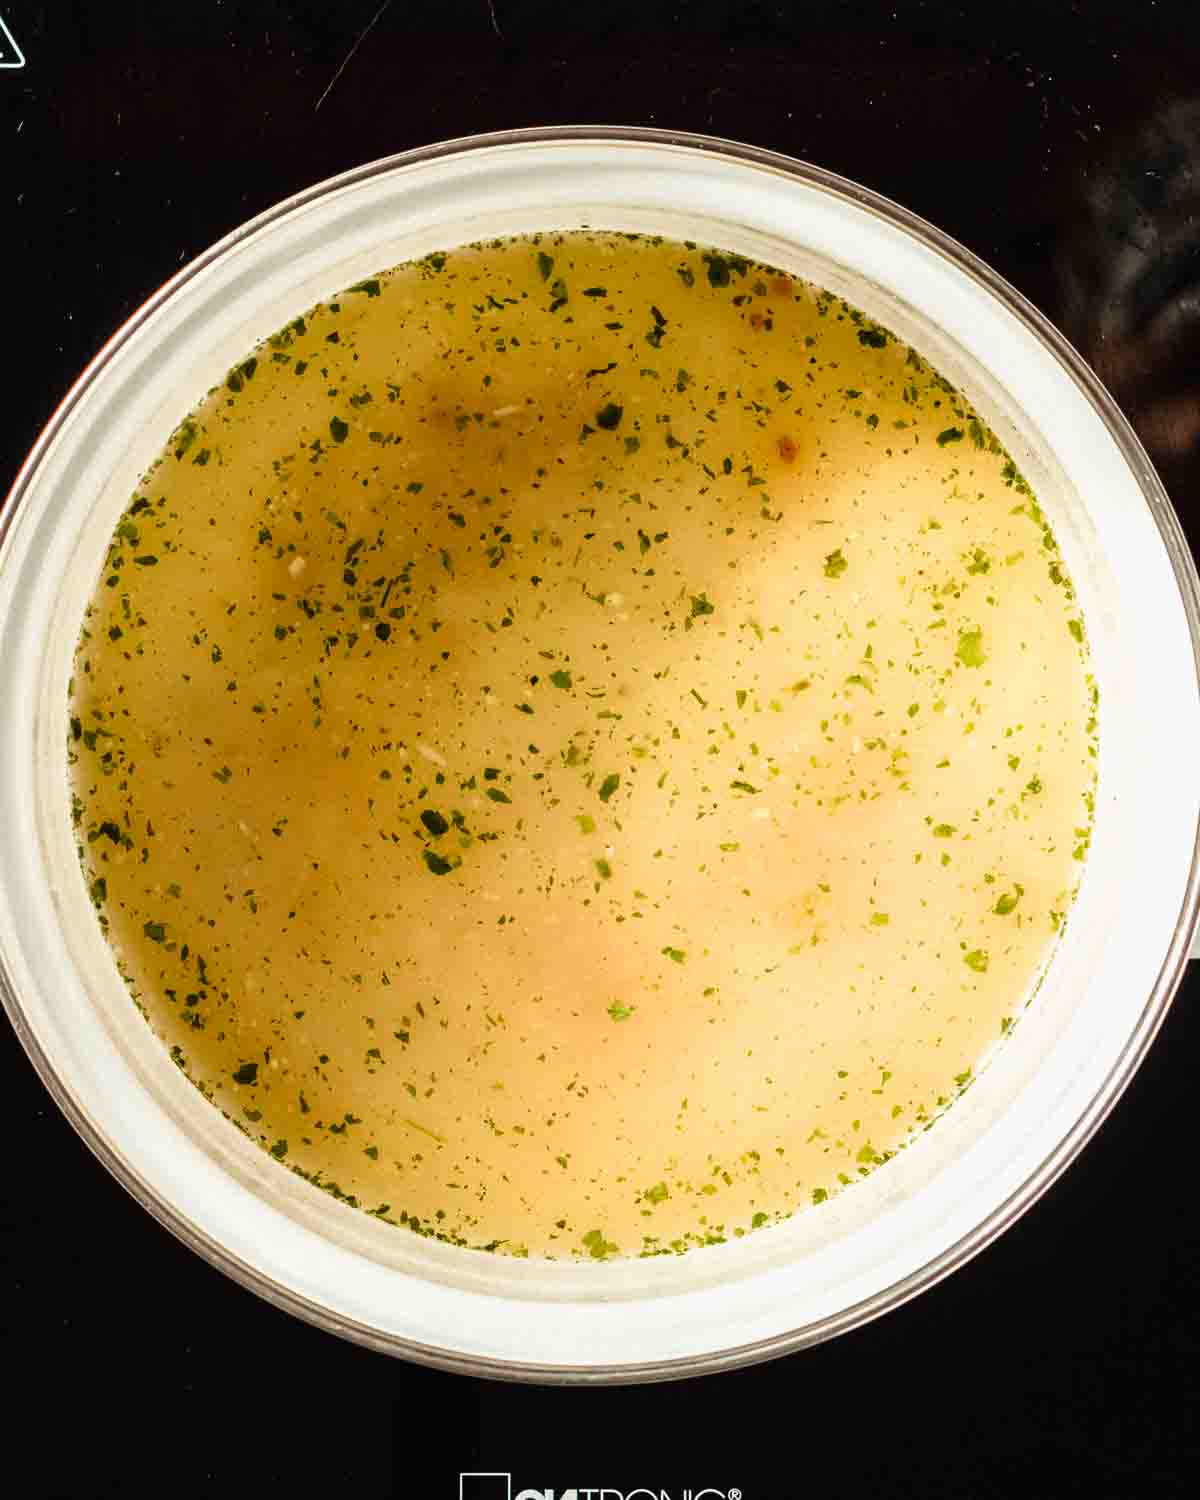 veggie broth in a saucepan.